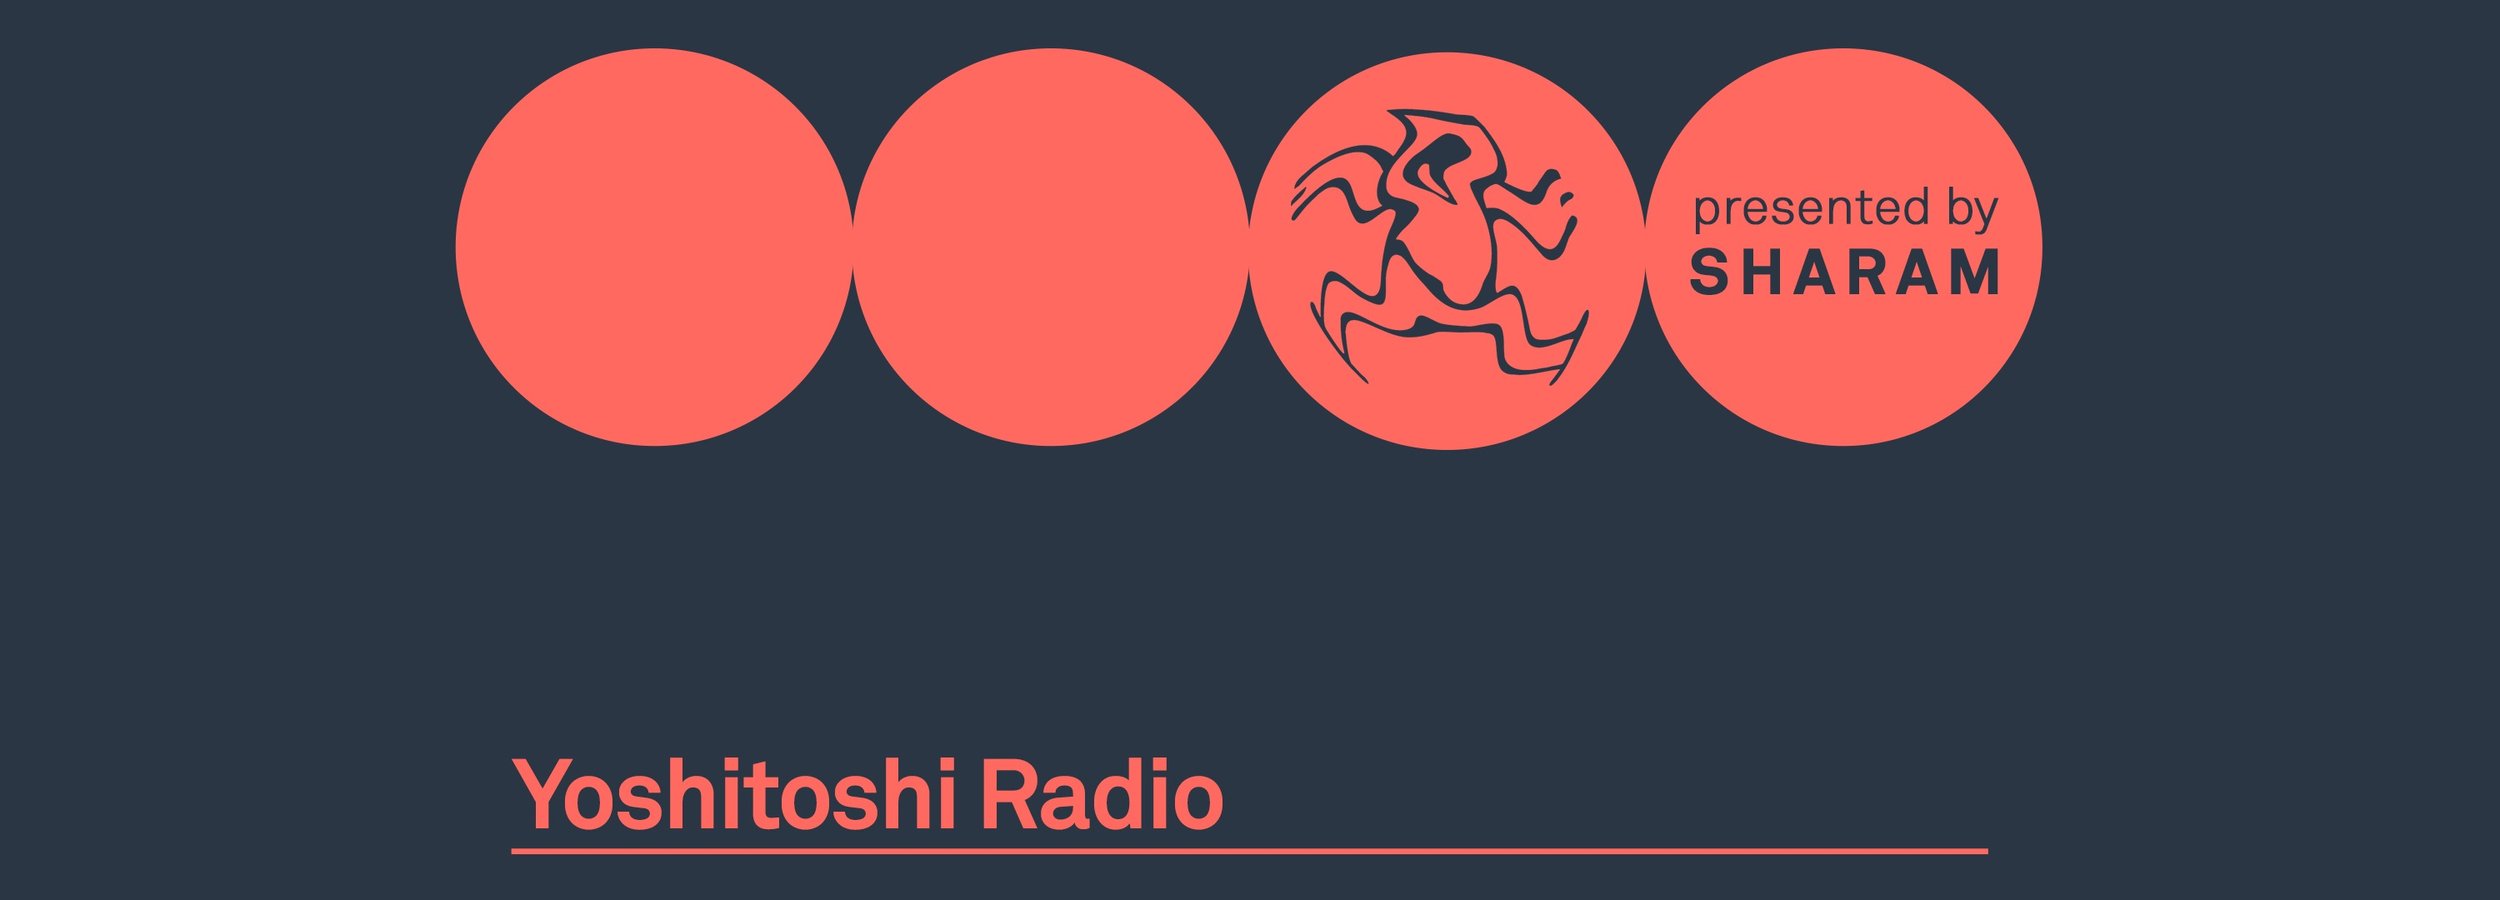 yoshitoshi radio-asset.jpeg